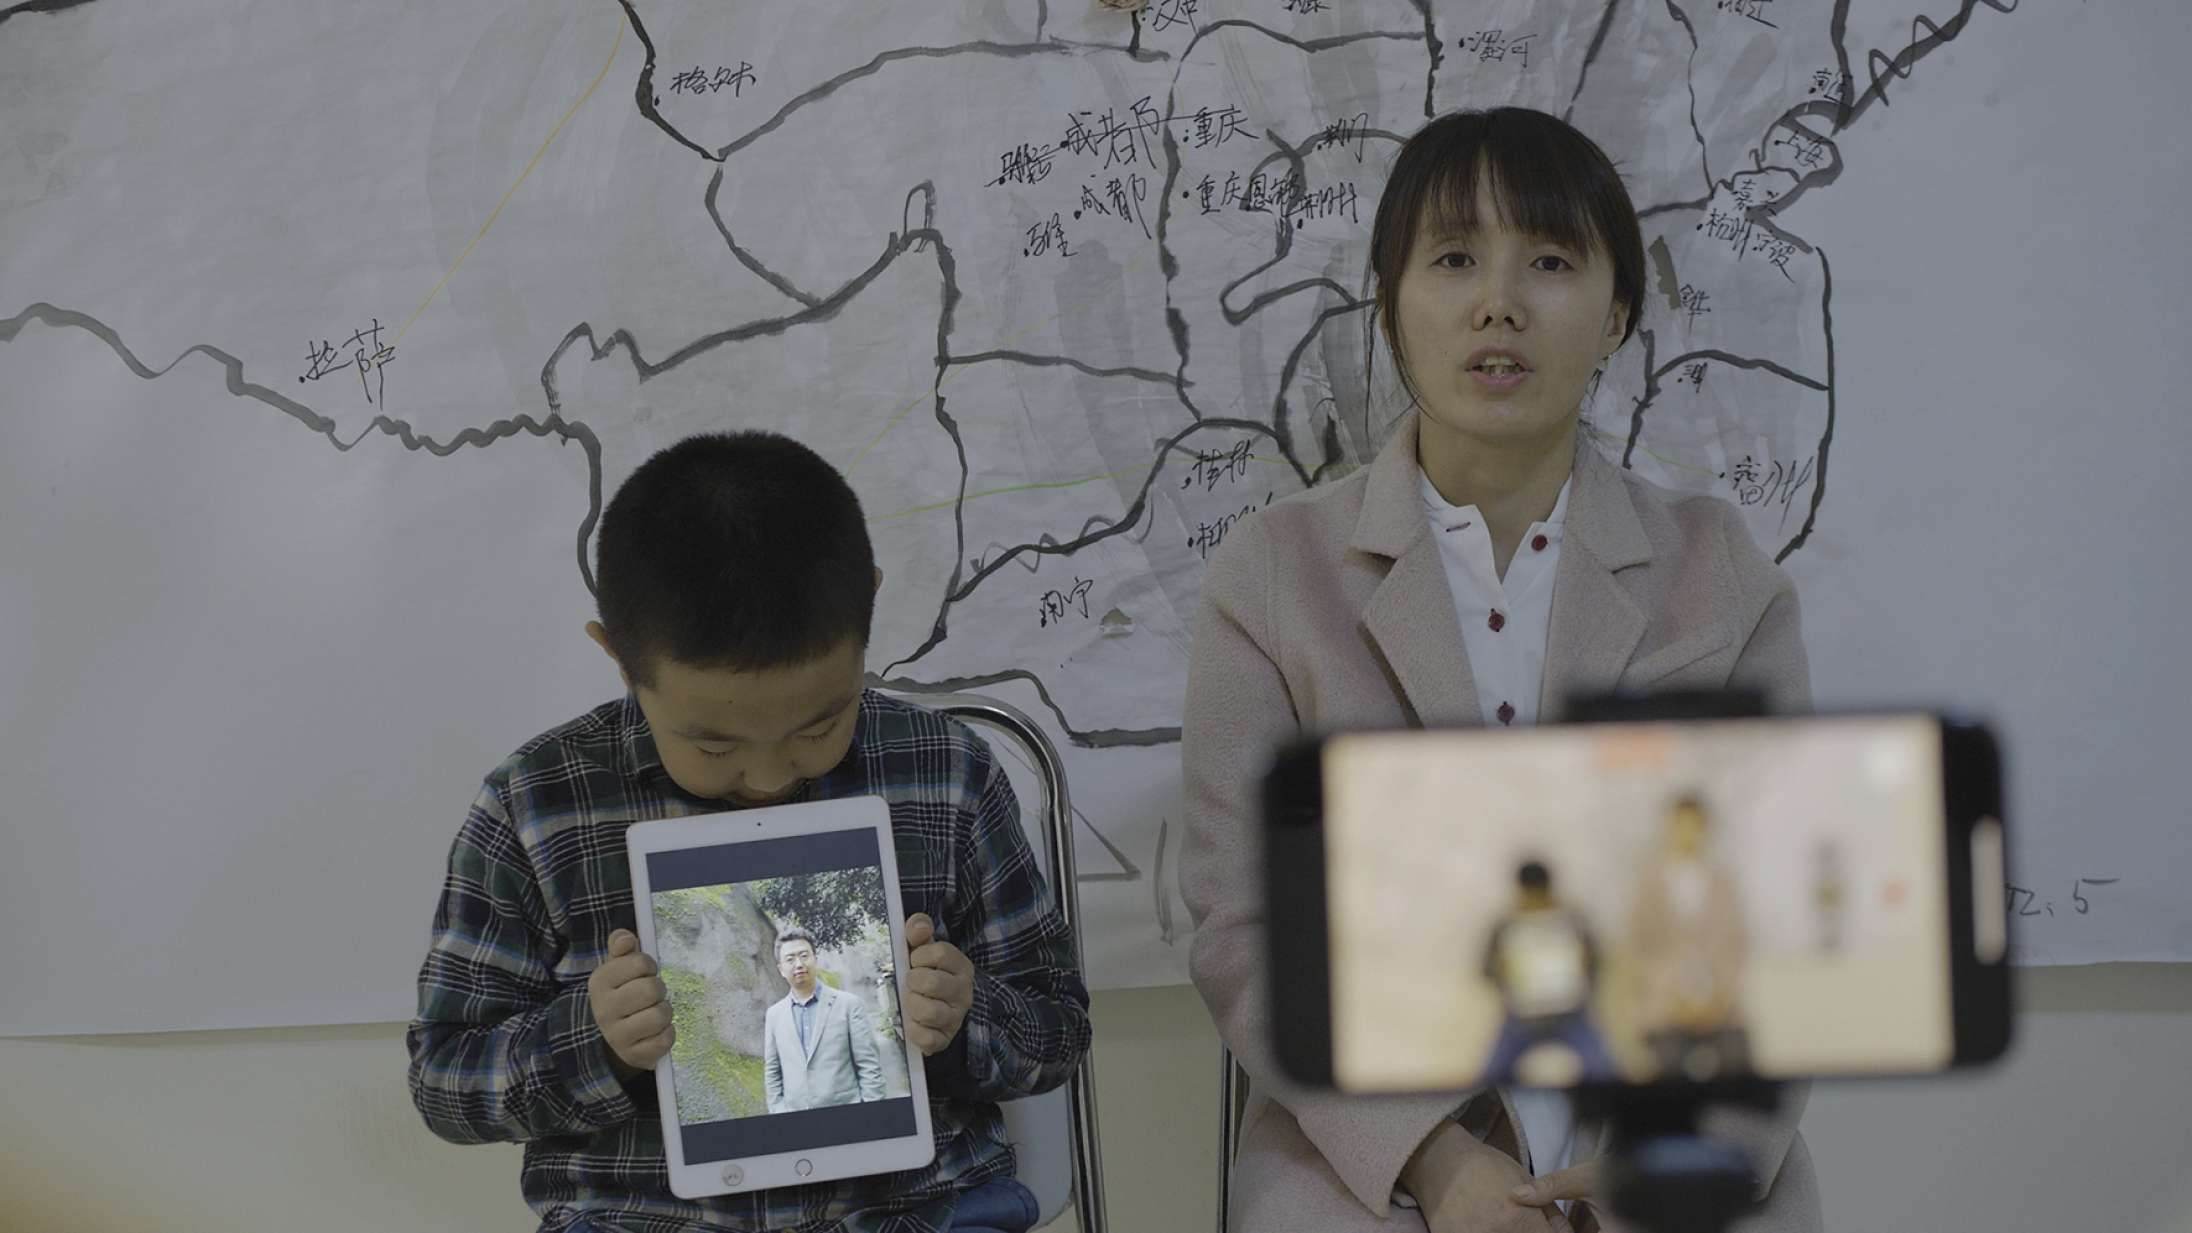 ’Total Trust’: Kinas overvågningsregime når dystopiske højder i foruroligende dokumentarfilm